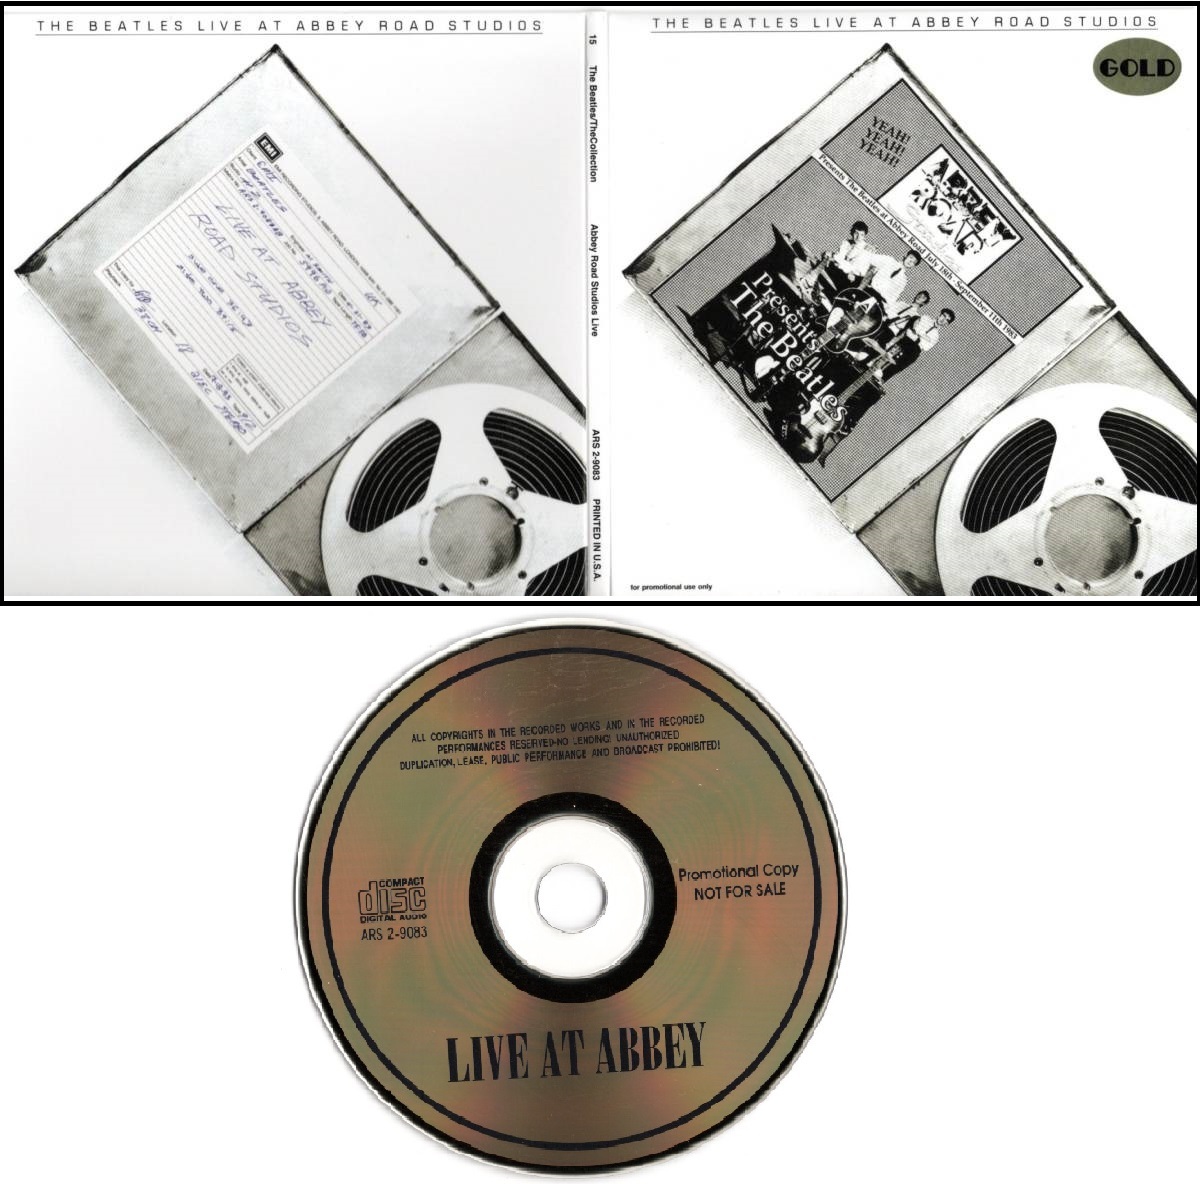 ゴールドCD 【Abbey Road Studios Live 見開き紙ジャケット (アナログ